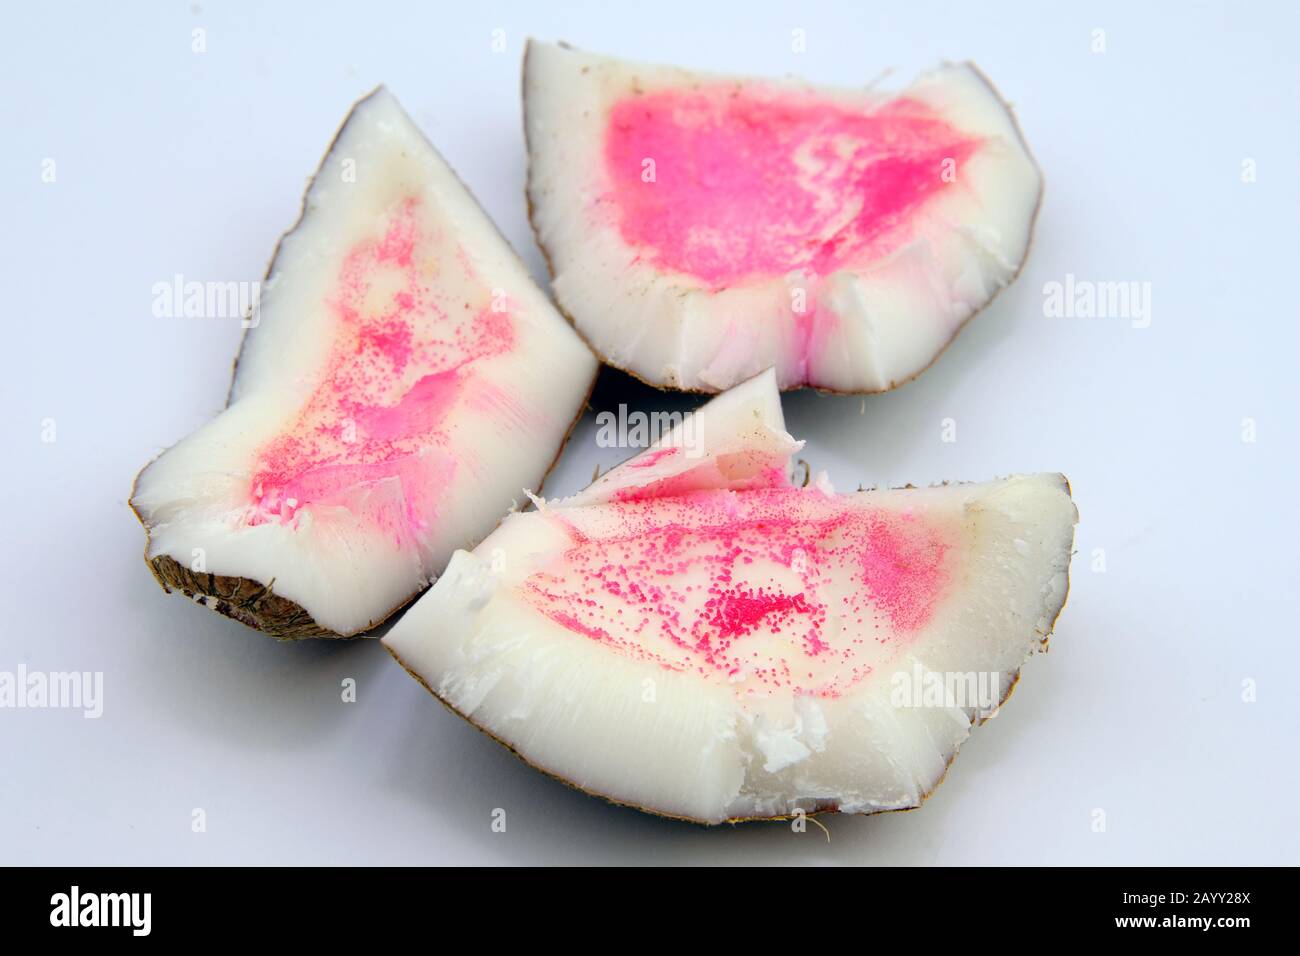 Rosa Flecken auf Kokosnuss. Kokosnuss wurde nach dem Öffnen aufgrund von Polyphenol-Oxidase oder mikrobiellem Angriff rosa. Stockfoto